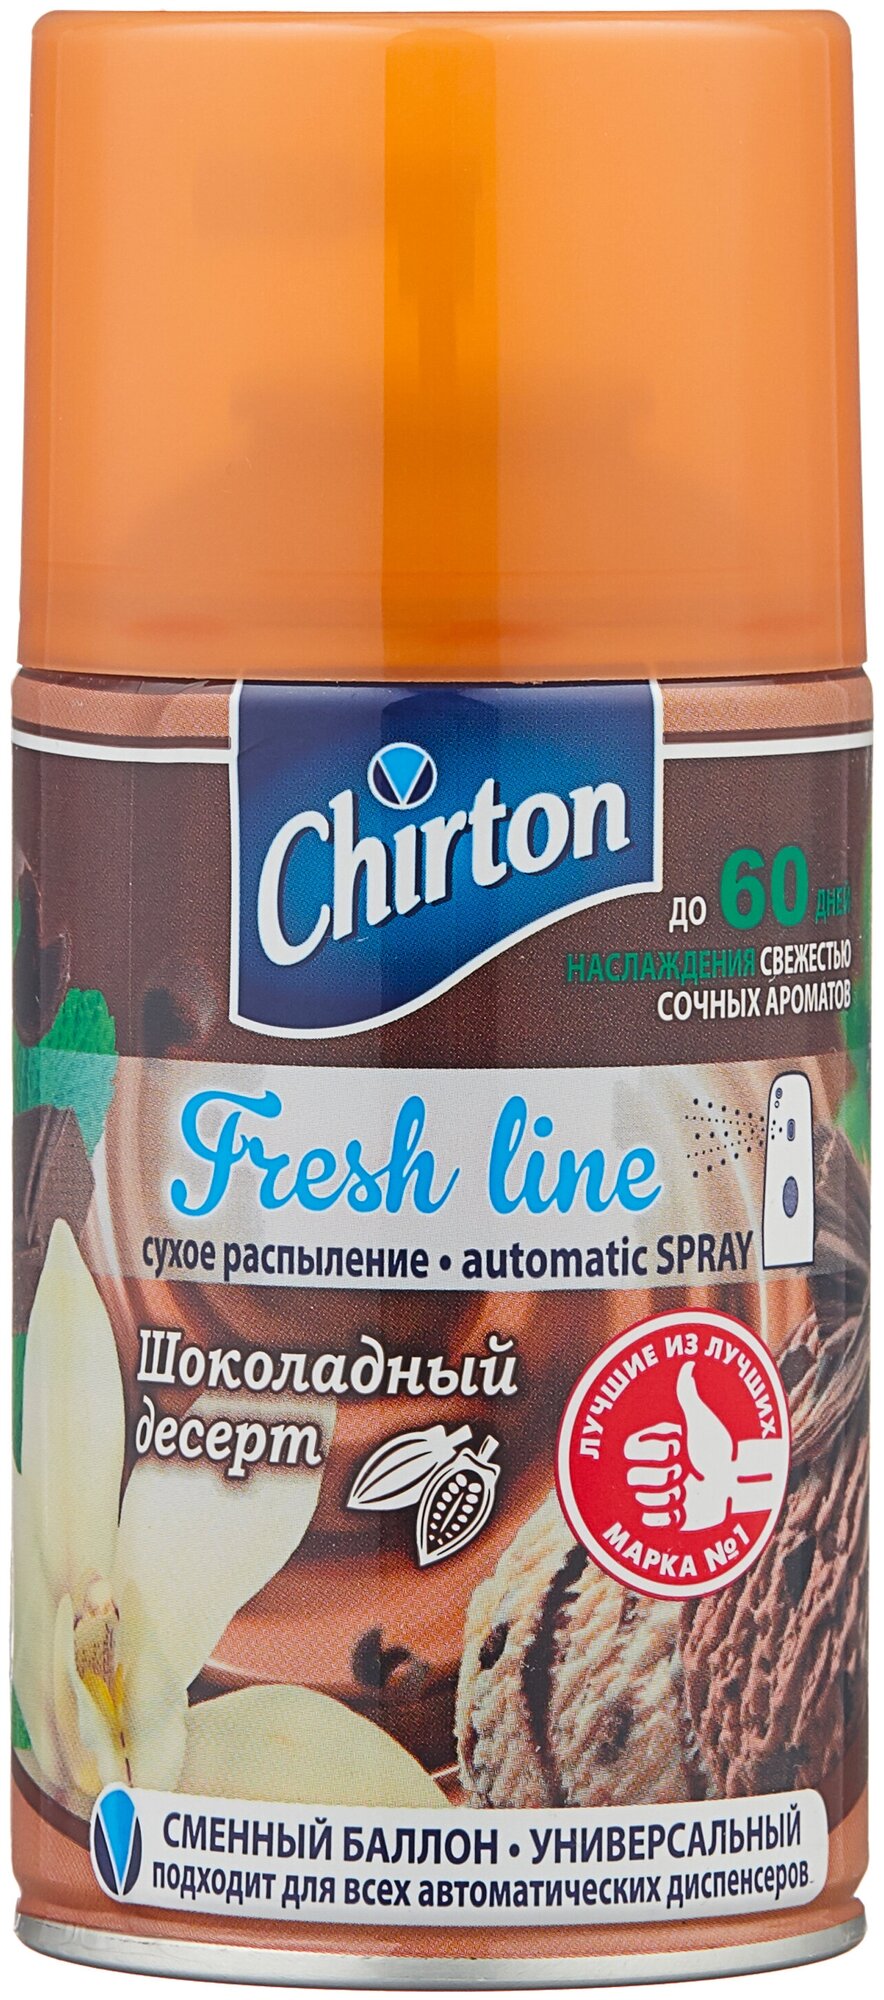 Chirton   Fresh line  , 250 